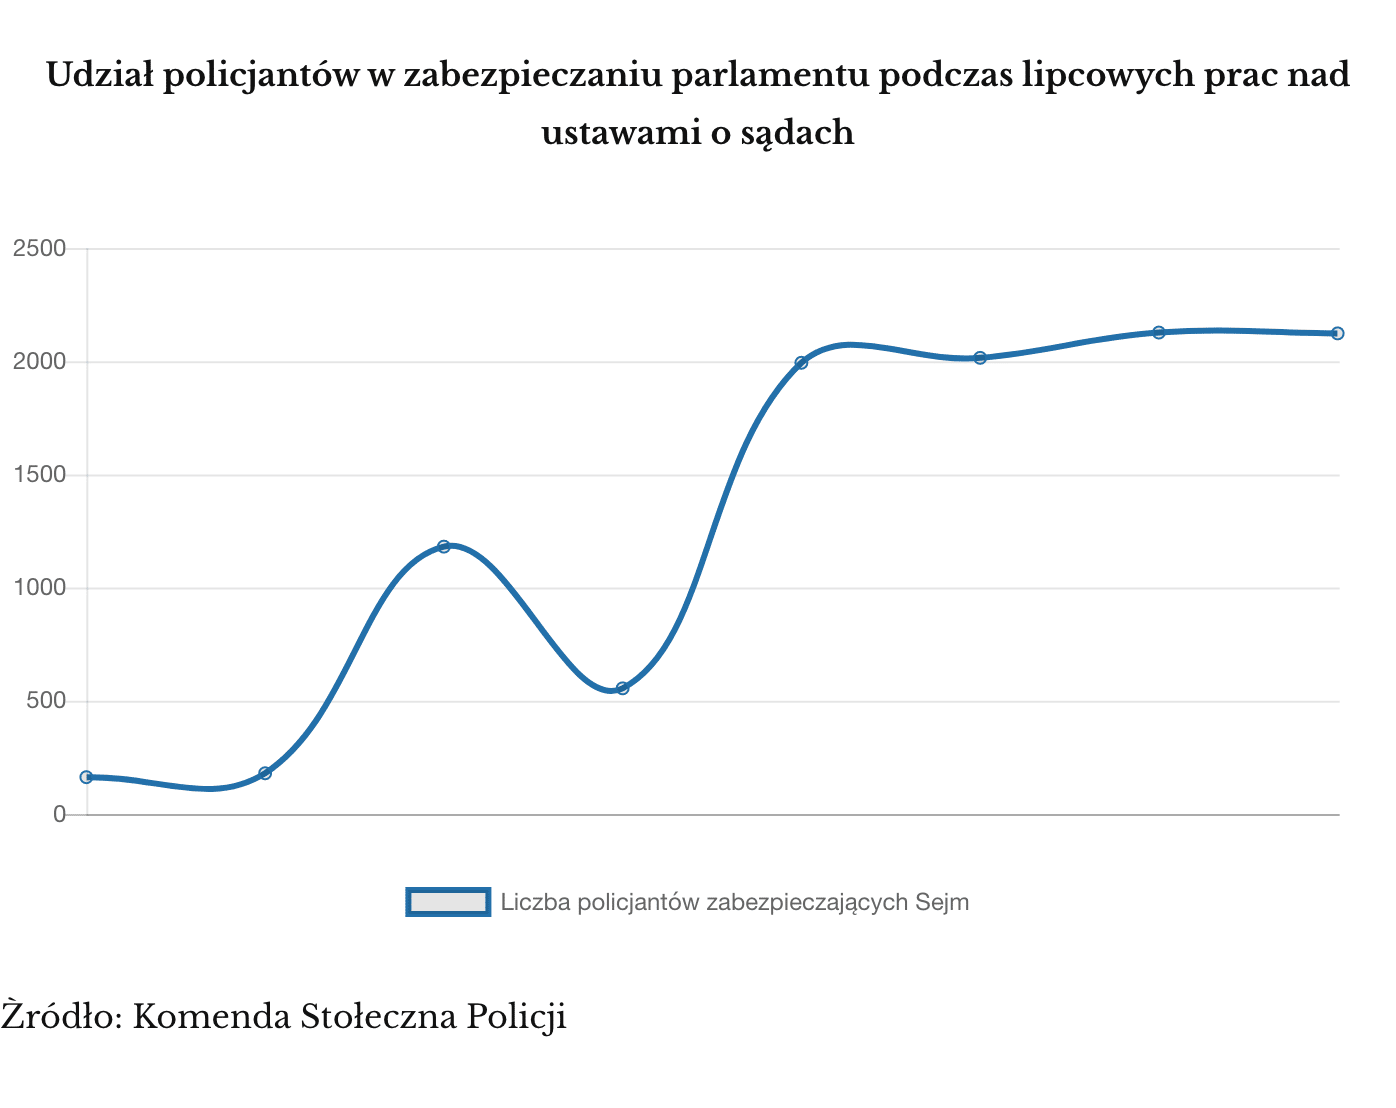 Liczba policjantów, którzy zabezpieczali Sejm podczas prac nad ustawami o sądach, w dniach 14-21 lipca 2017